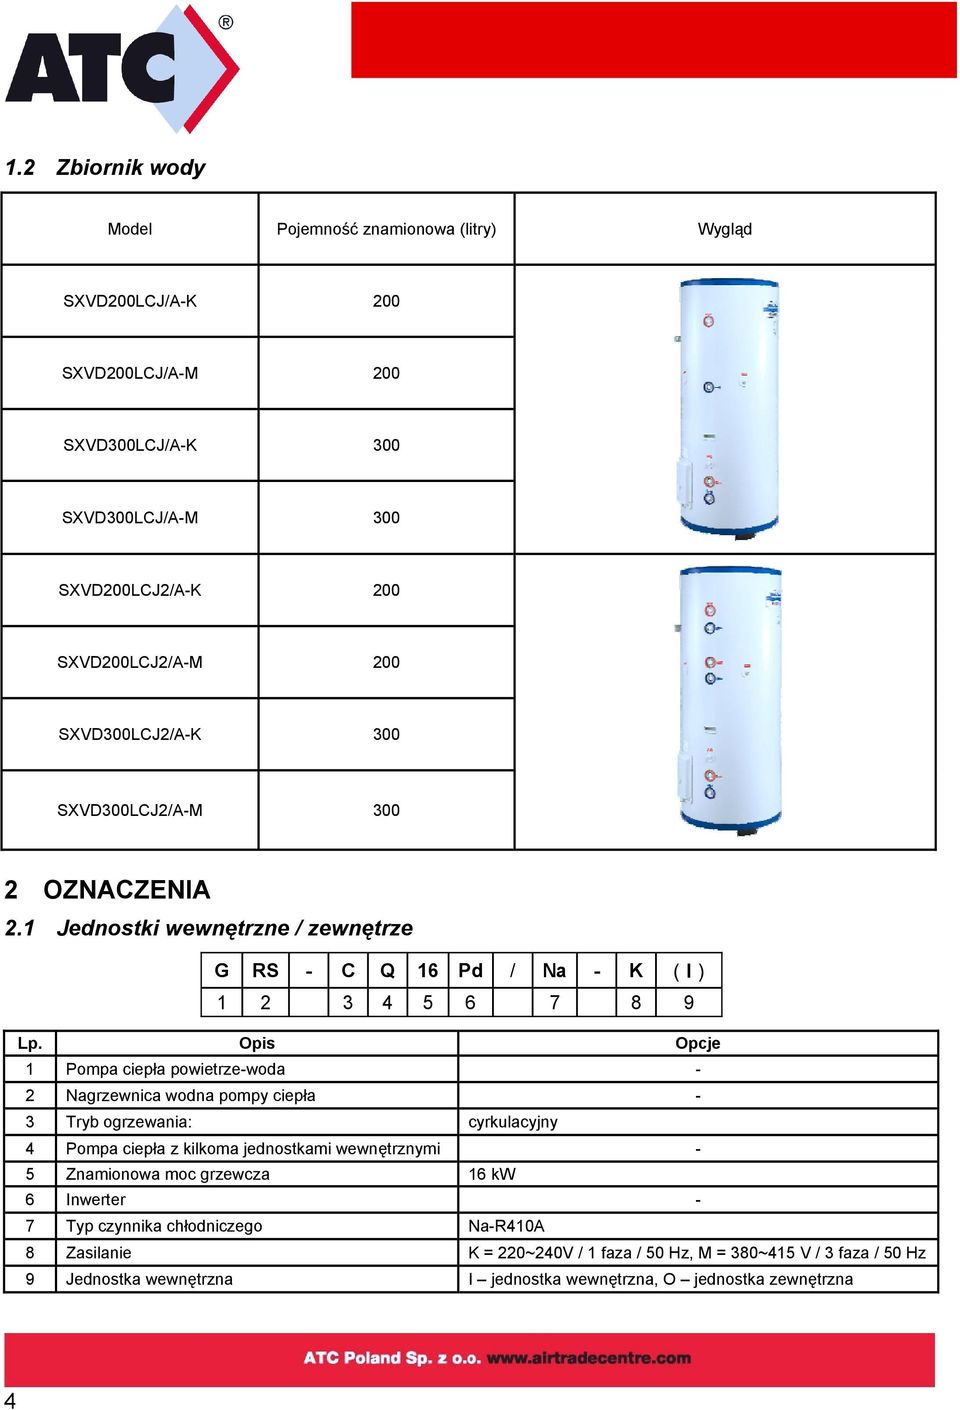 Opis Opcje 1 Pompa ciepła powietrze-woda - 2 Nagrzewnica wodna pompy ciepła - 3 Tryb ogrzewania: cyrkulacyjny 4 Pompa ciepła z kilkoma jednostkami wewnętrznymi - 5 Znamionowa